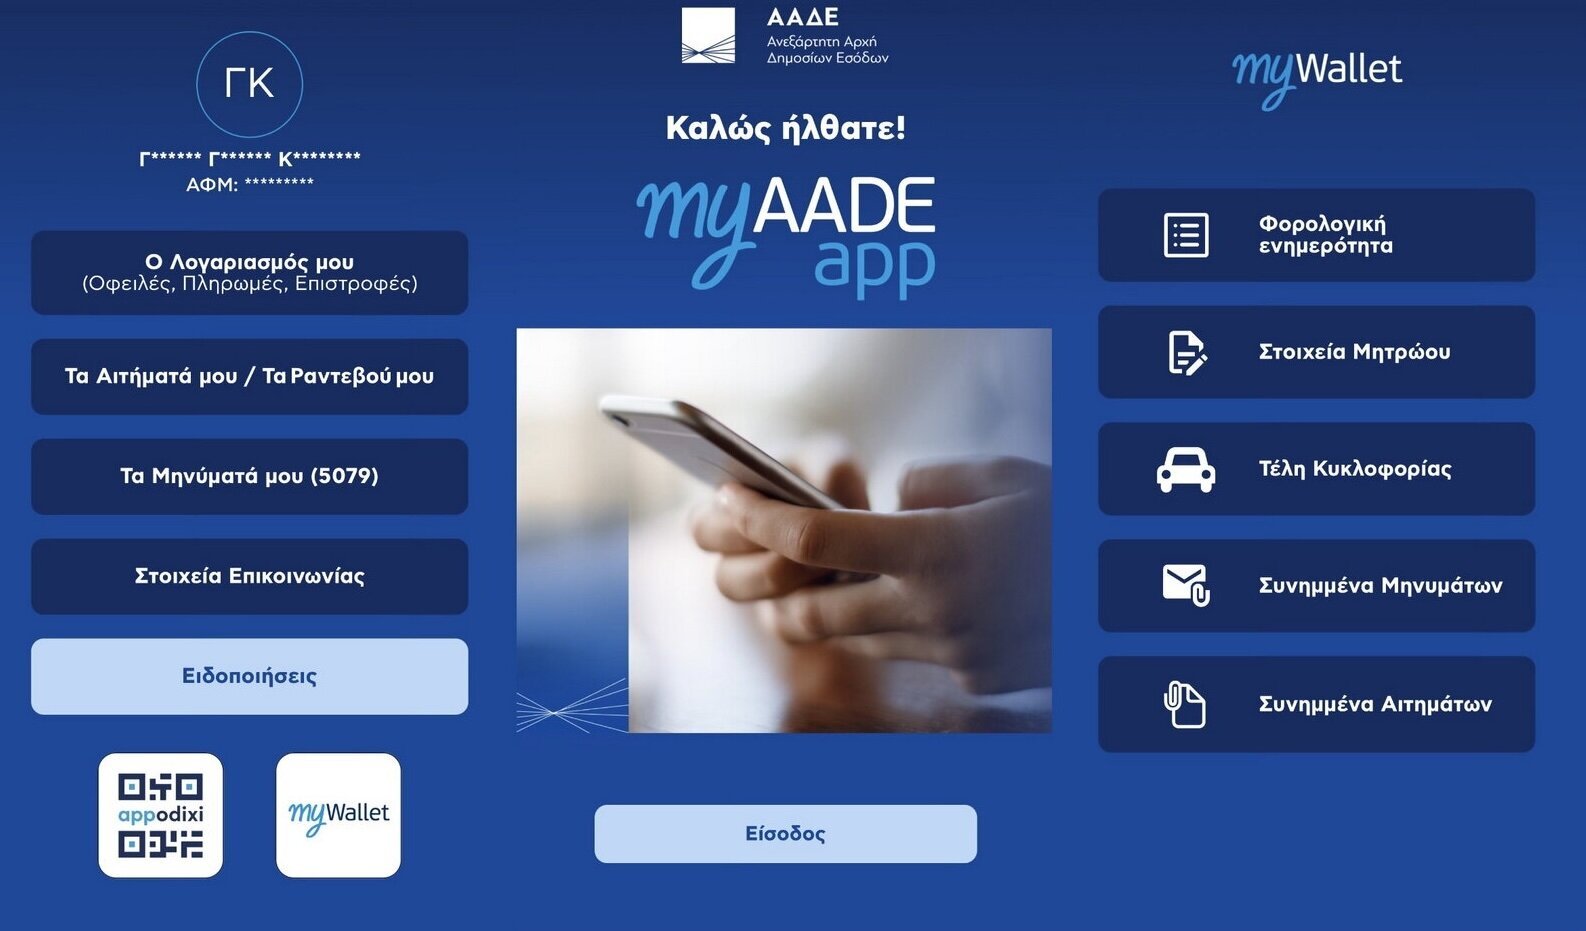 Περισσότερες πληροφορίες για "Το MyAADE app δίνει την δυνατότητα διαχείρισης φορολογικών υποθέσεων μέσω smartphone, σε πολίτες και εταιρείες"